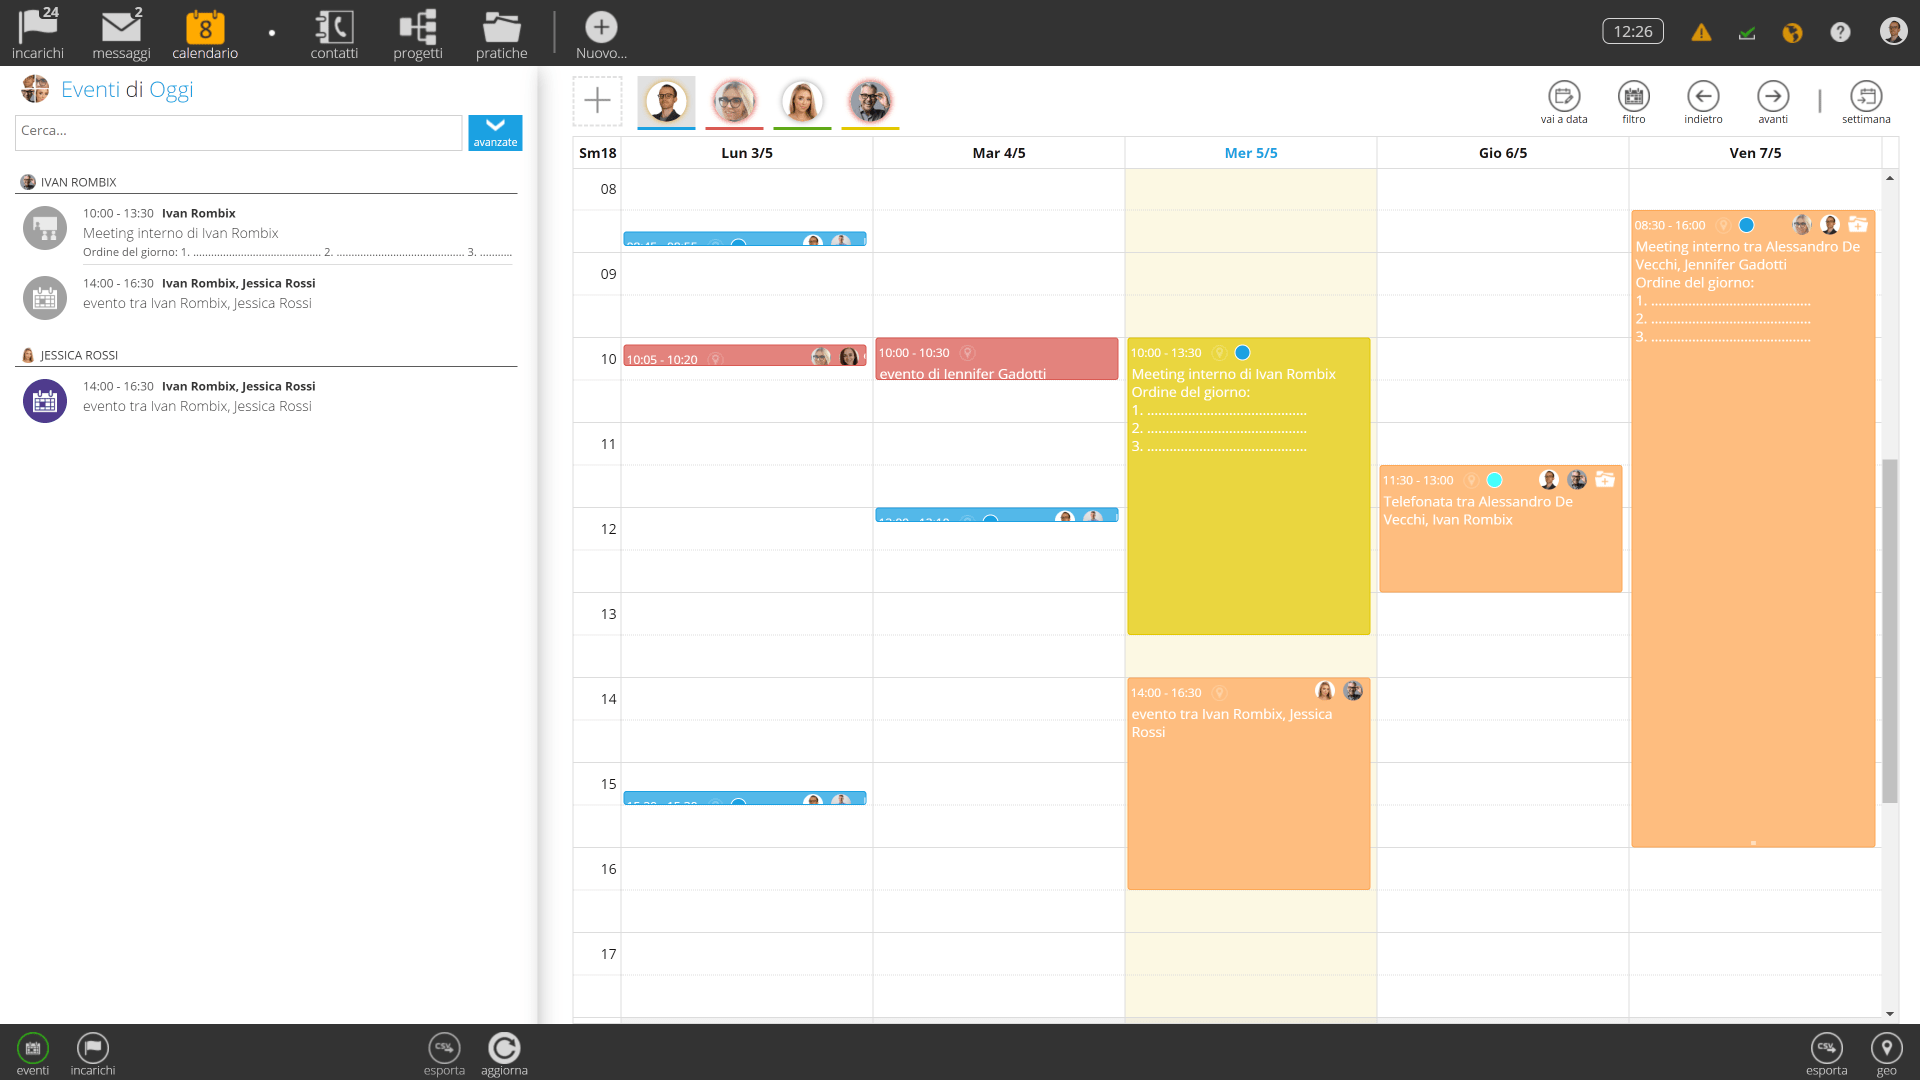 Tweppy Metodo e Strumento - Calendario aziendale condiviso. Dettagli eventi personalizzabili, inviti per partecipanti esterni.